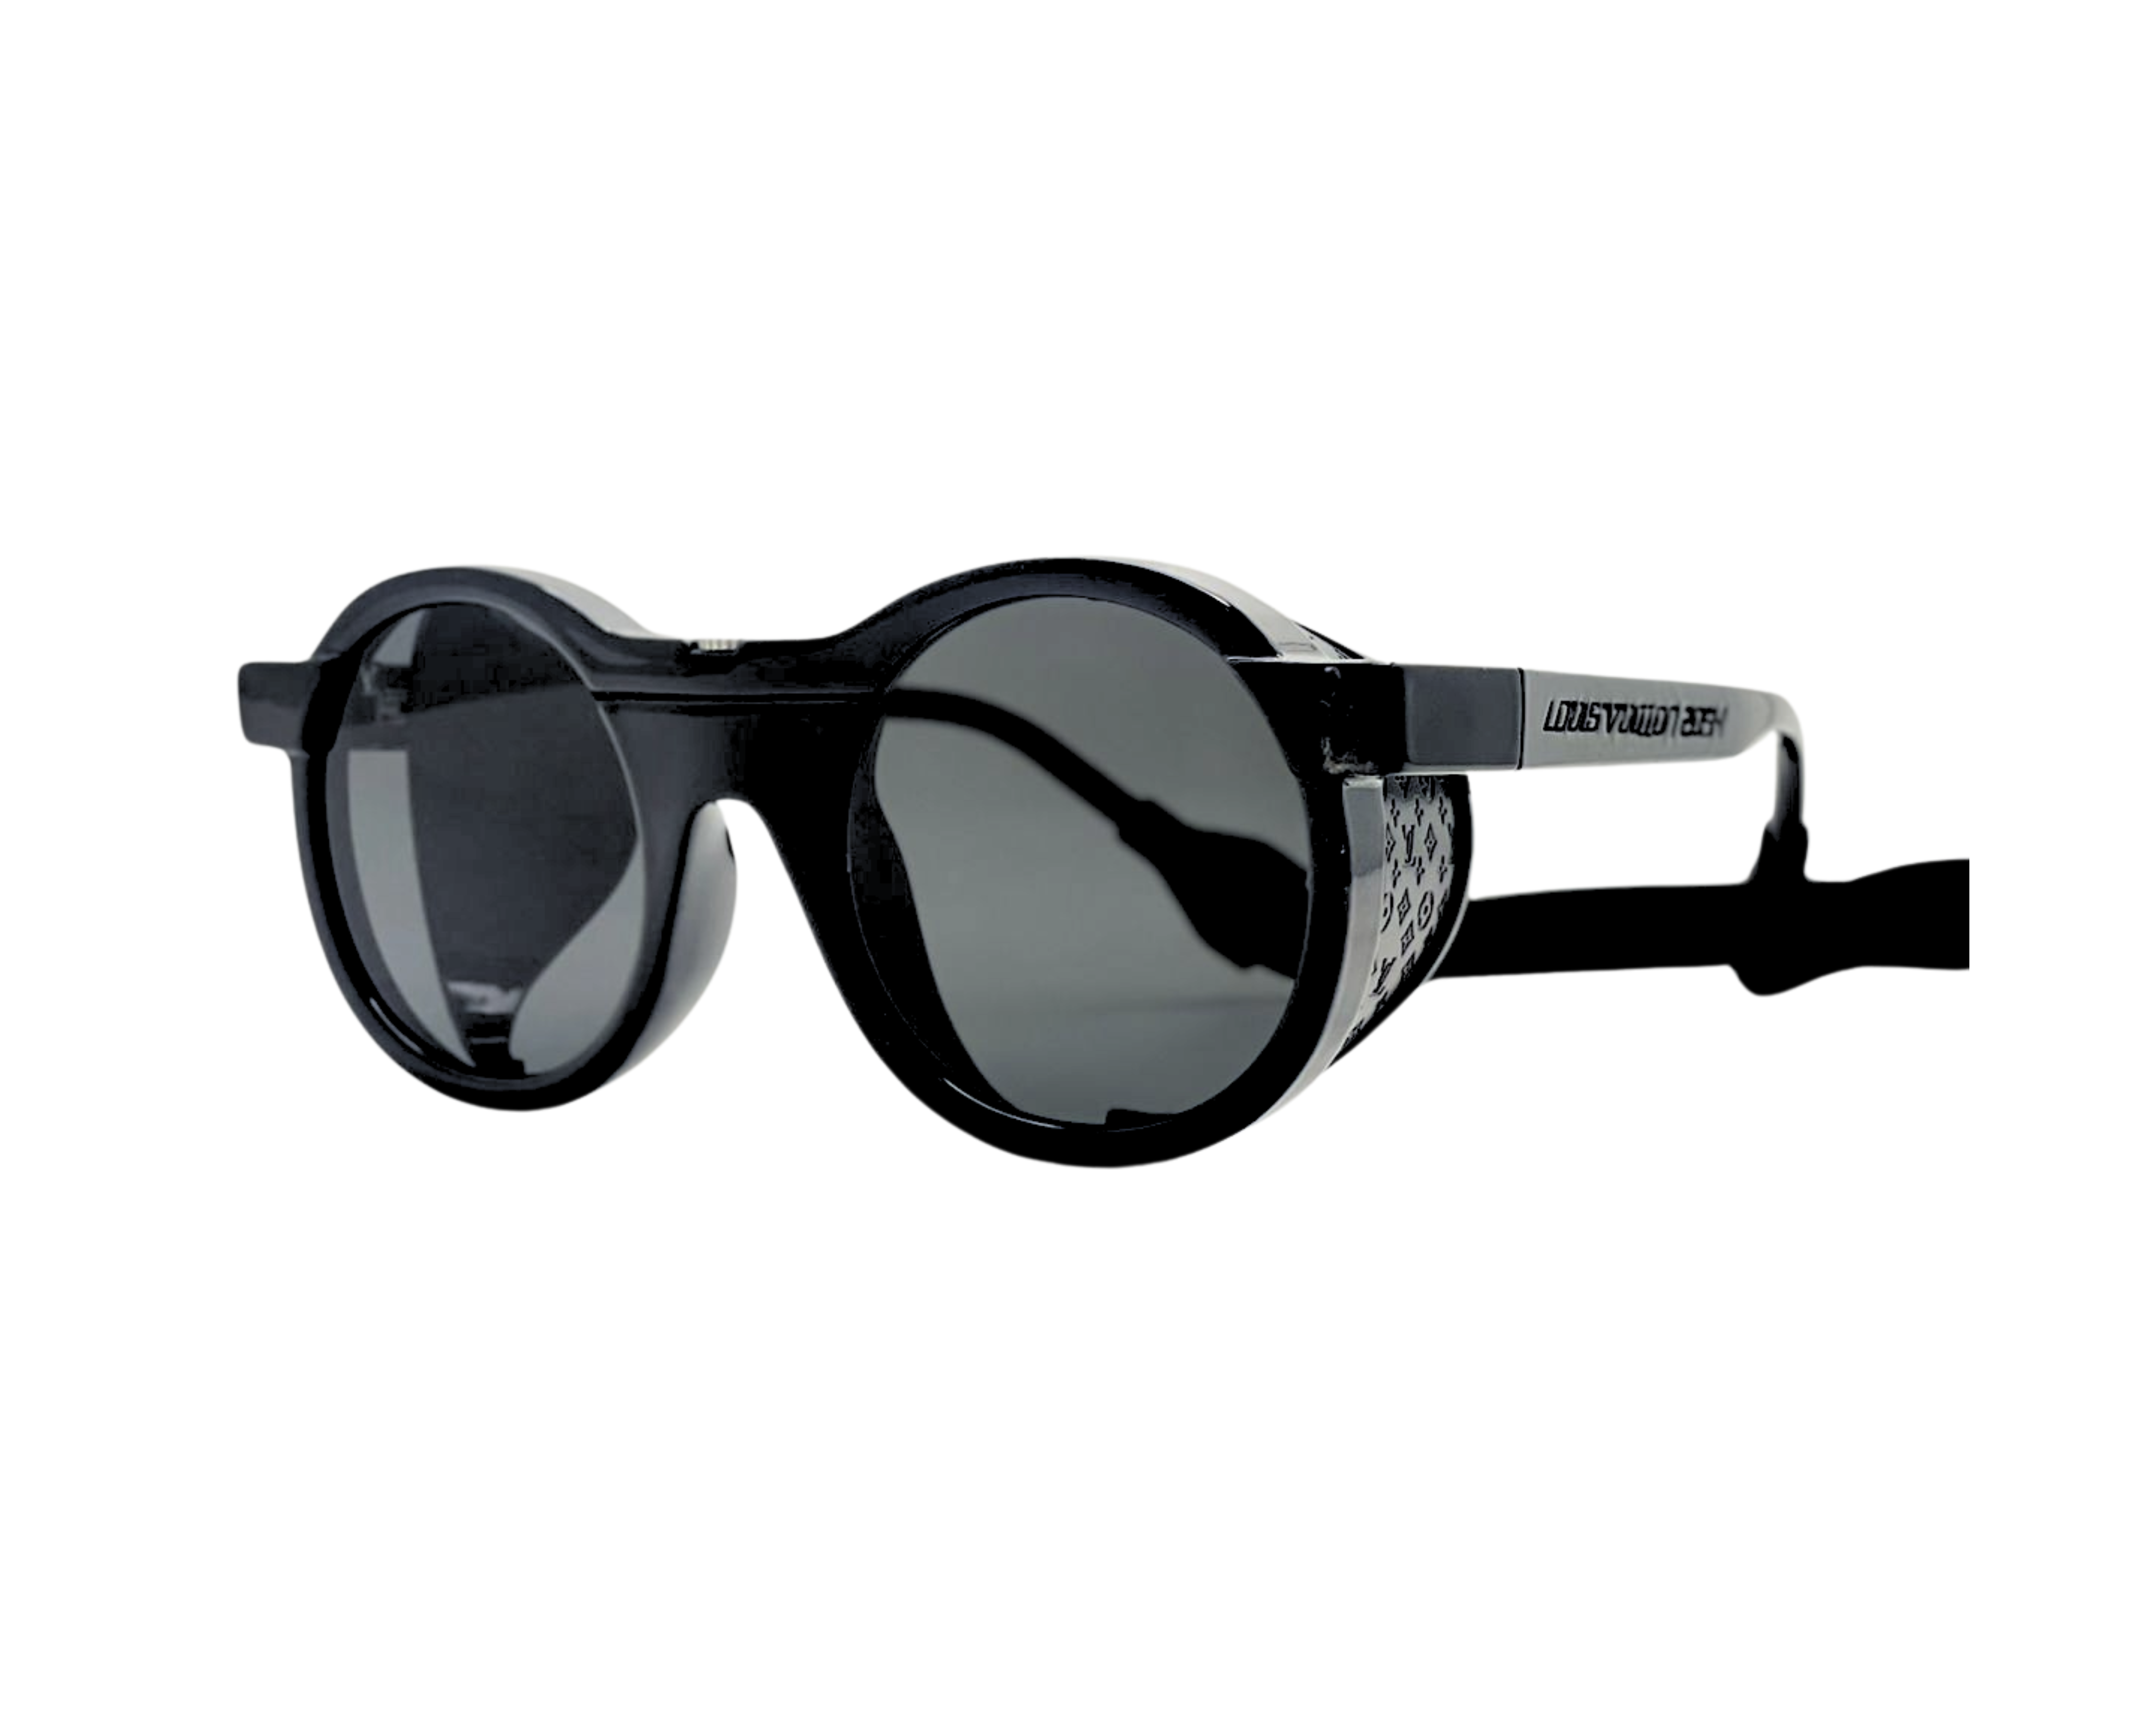 NS Luxury - 1319 - Black - Sunglasses